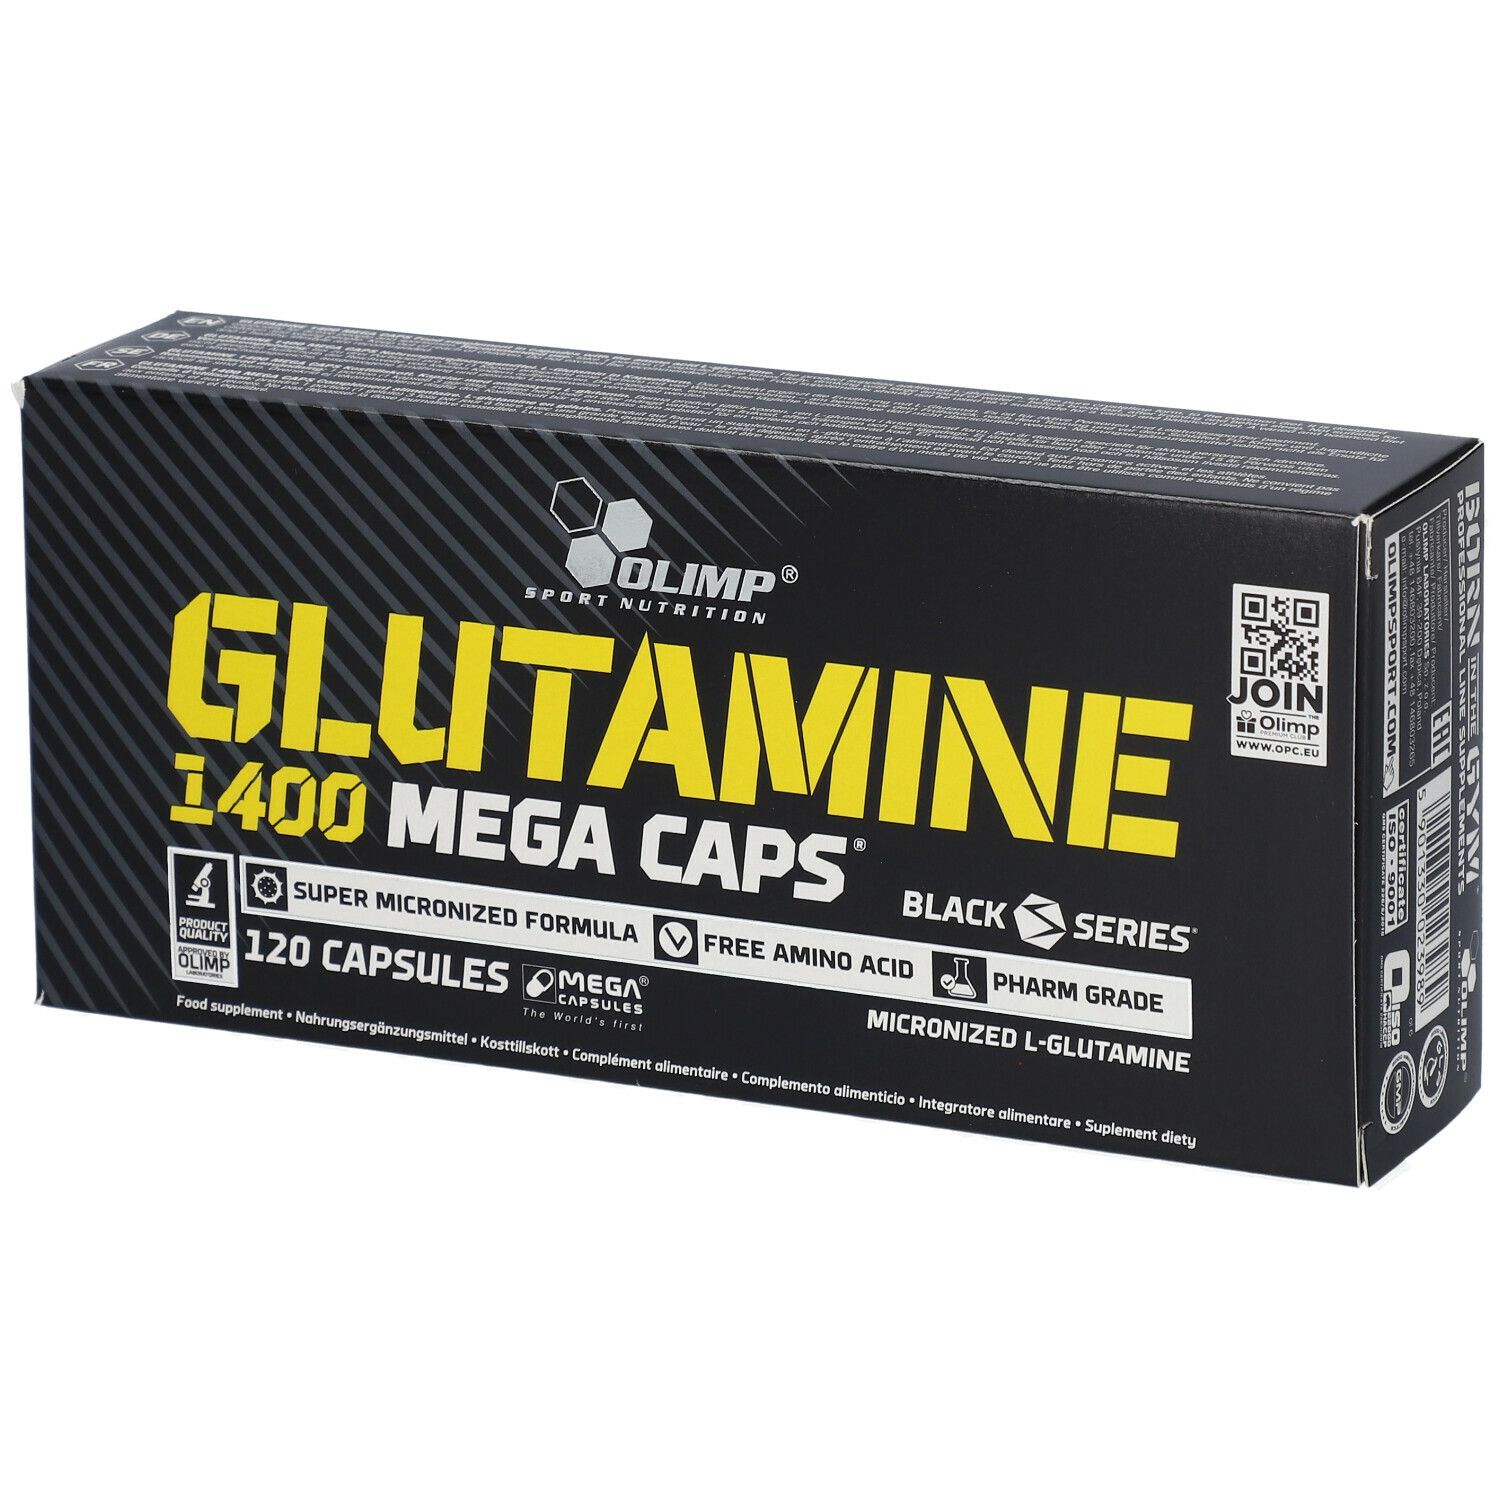 OLIMP® Glutamine 1400 Mega Caps